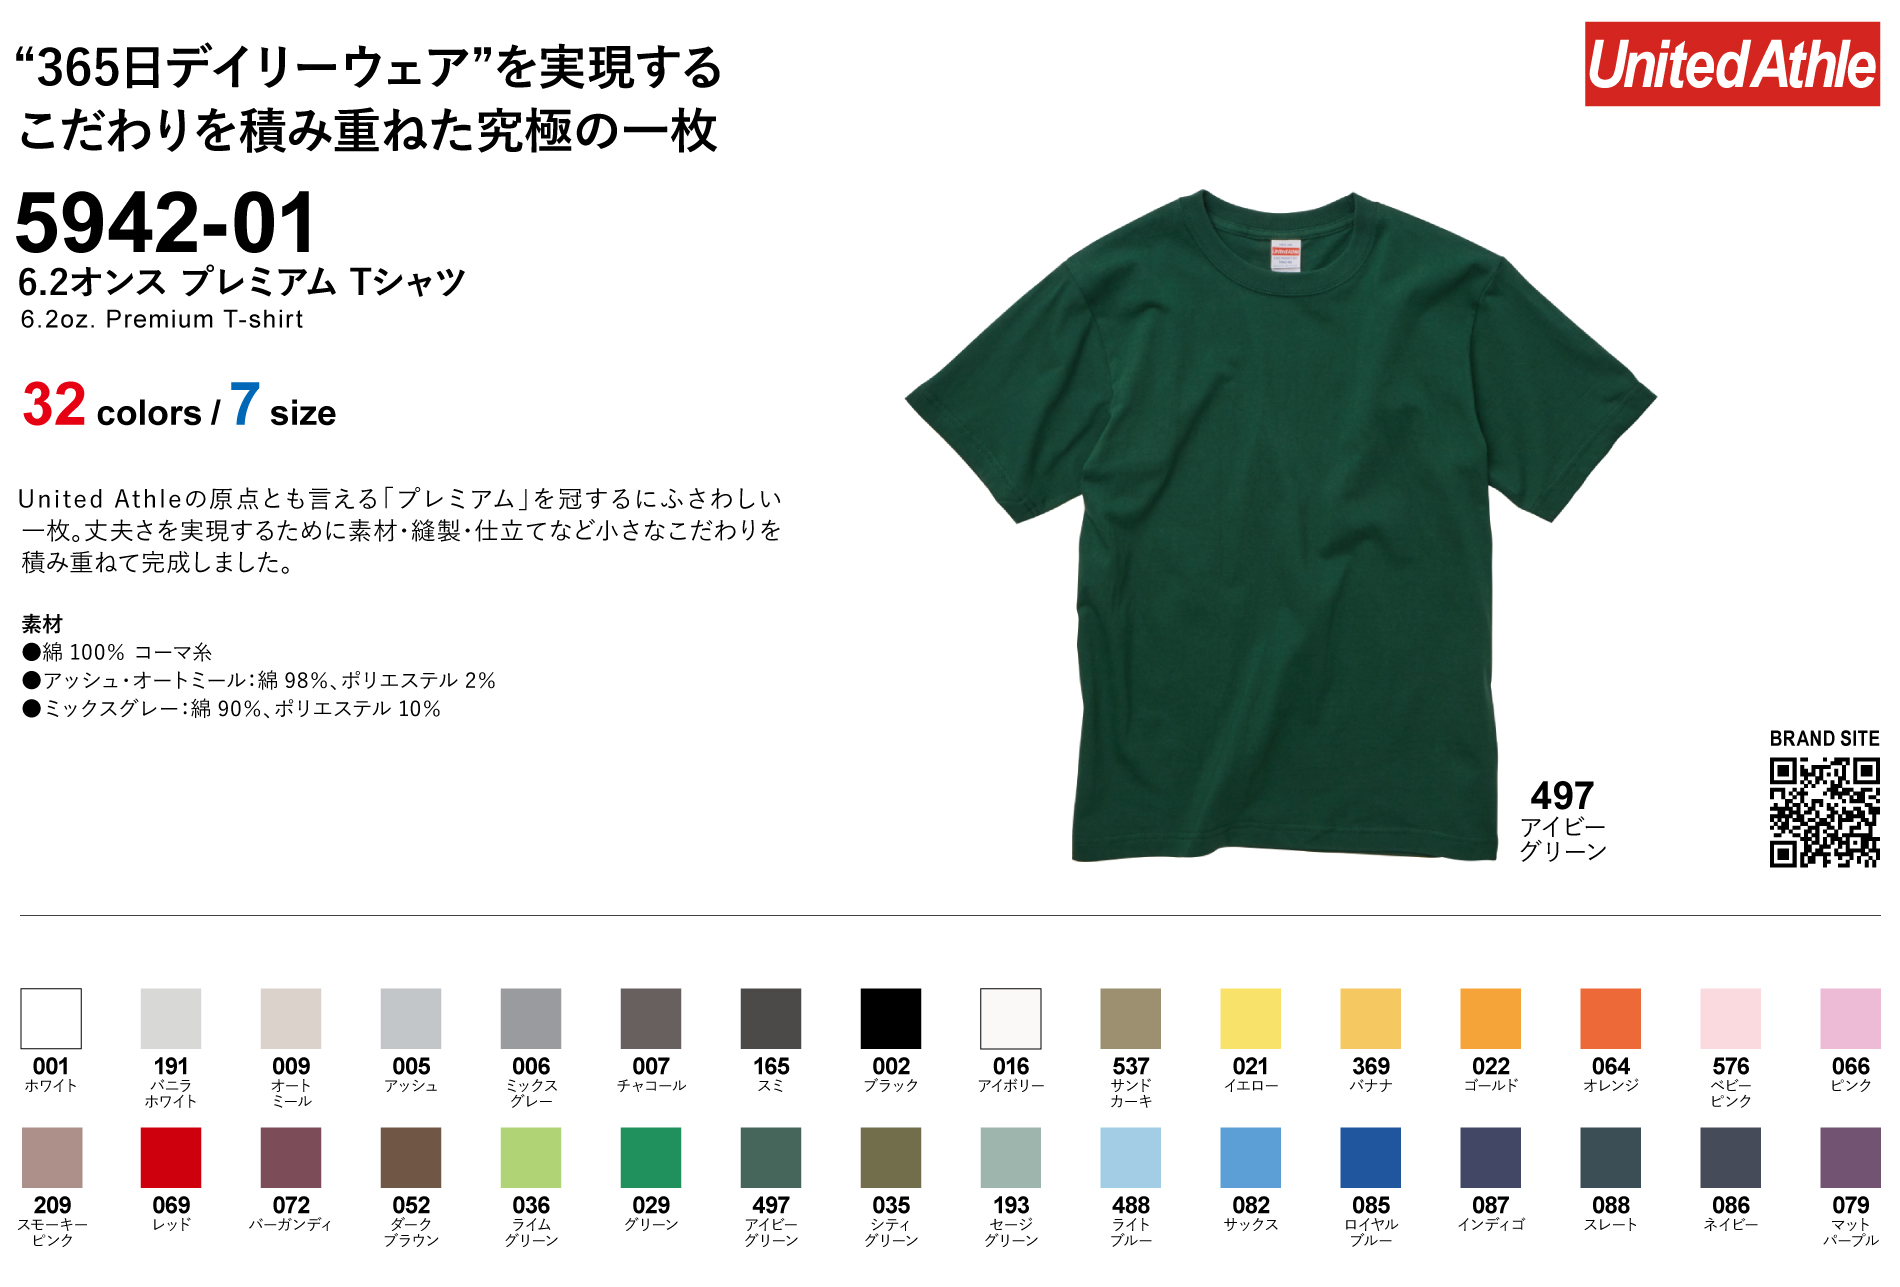 ユナイテッドアスレ 6.2オンス プレミアム Tシャツ Style No. 5942-01一覧